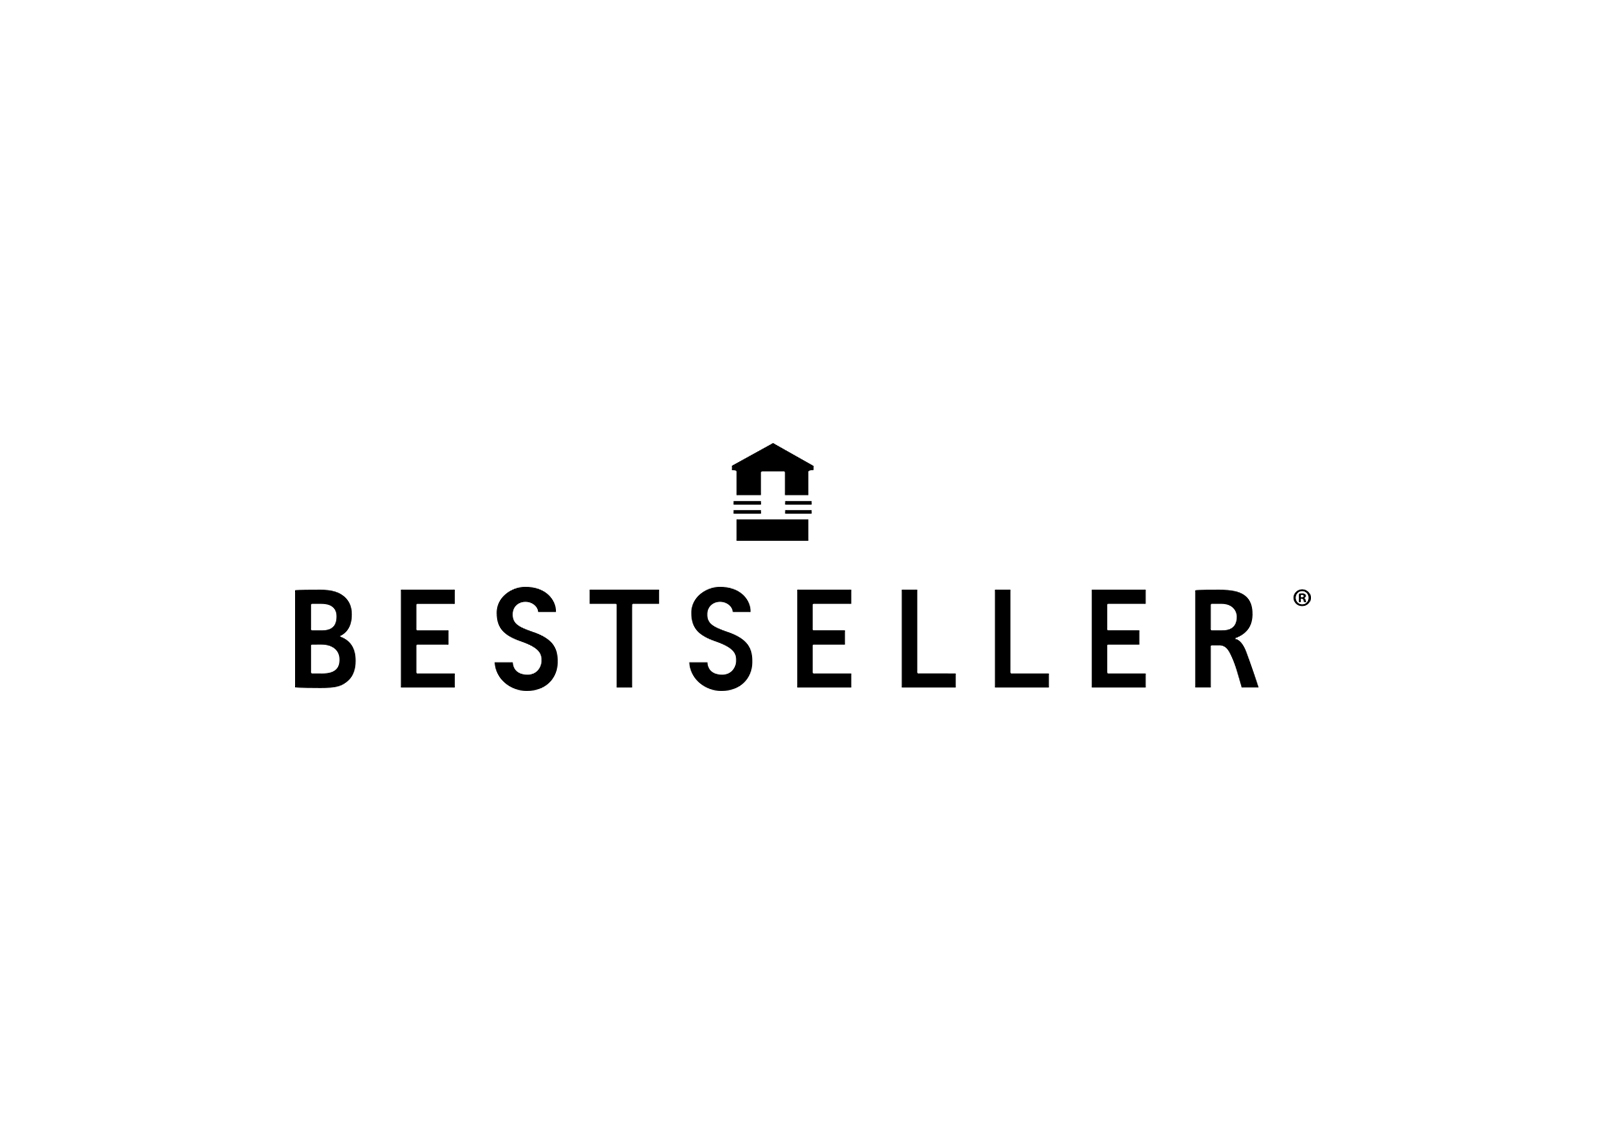 Bestseller-logo.jpg